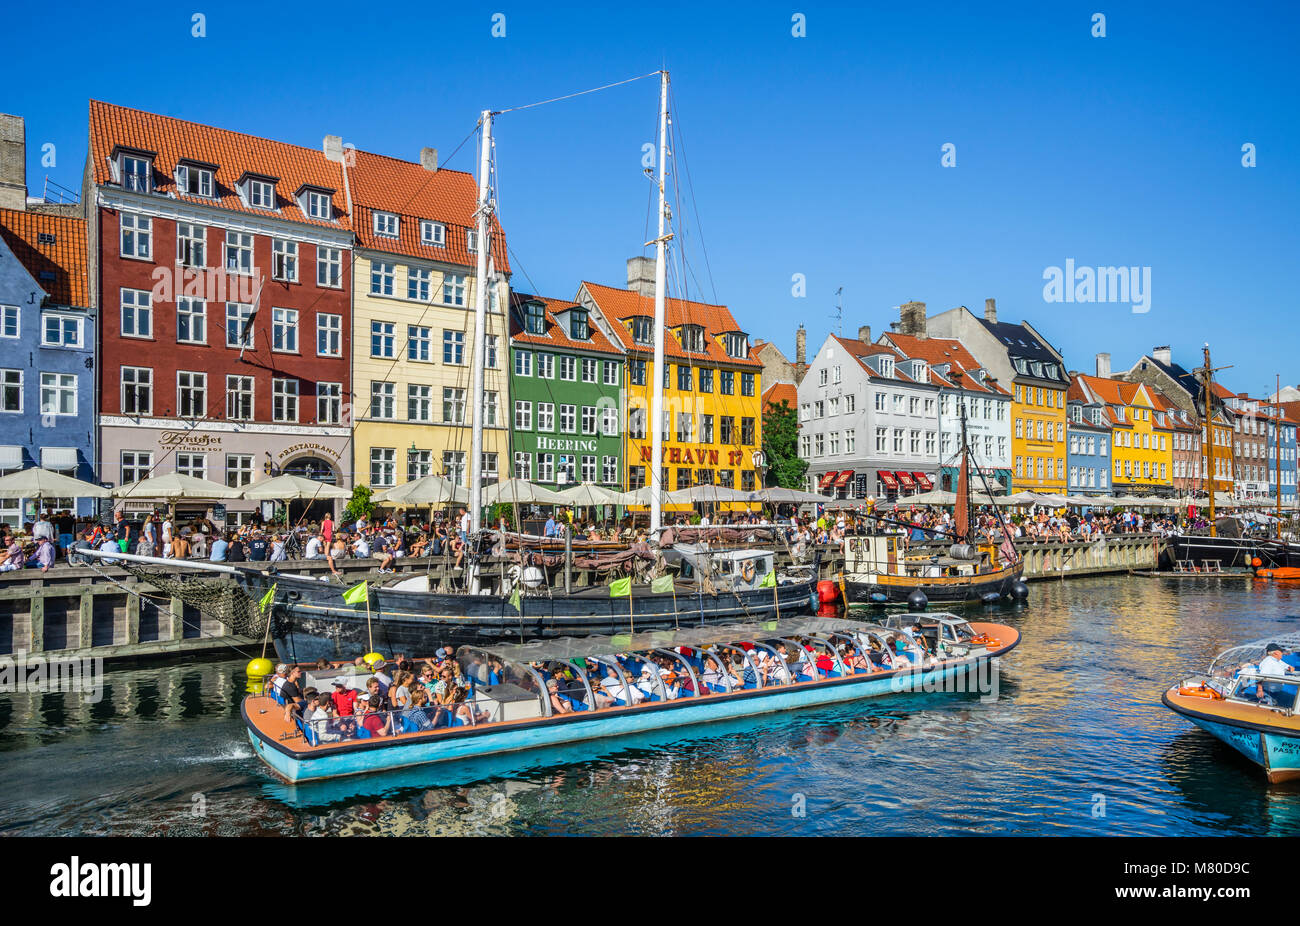 Le Danemark, la Nouvelle-Zélande, Copenhague, vue sur le front de mer du port canal de Nyhaven, avec des maisons aux couleurs vives, des restaurants, des cafés et de bois historique Banque D'Images